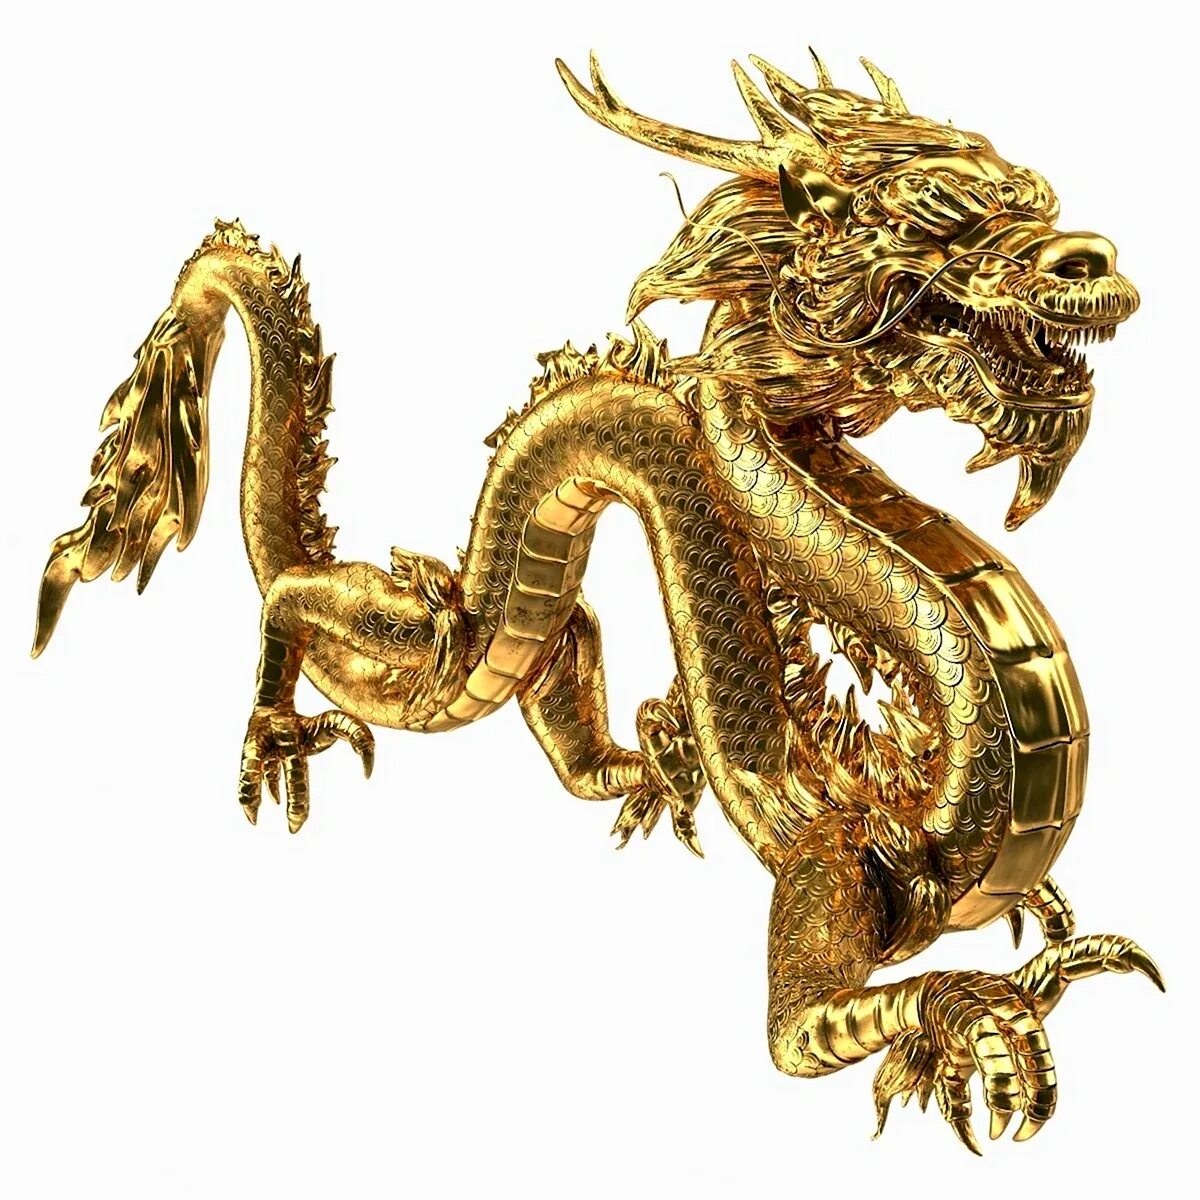 Какой год дракона деревянный. Zolotoy Drakon/золотой дракон. Статуя золотого дракона Китай. Китай дракон символ императора. Золотой дракон в китайской мифологии.